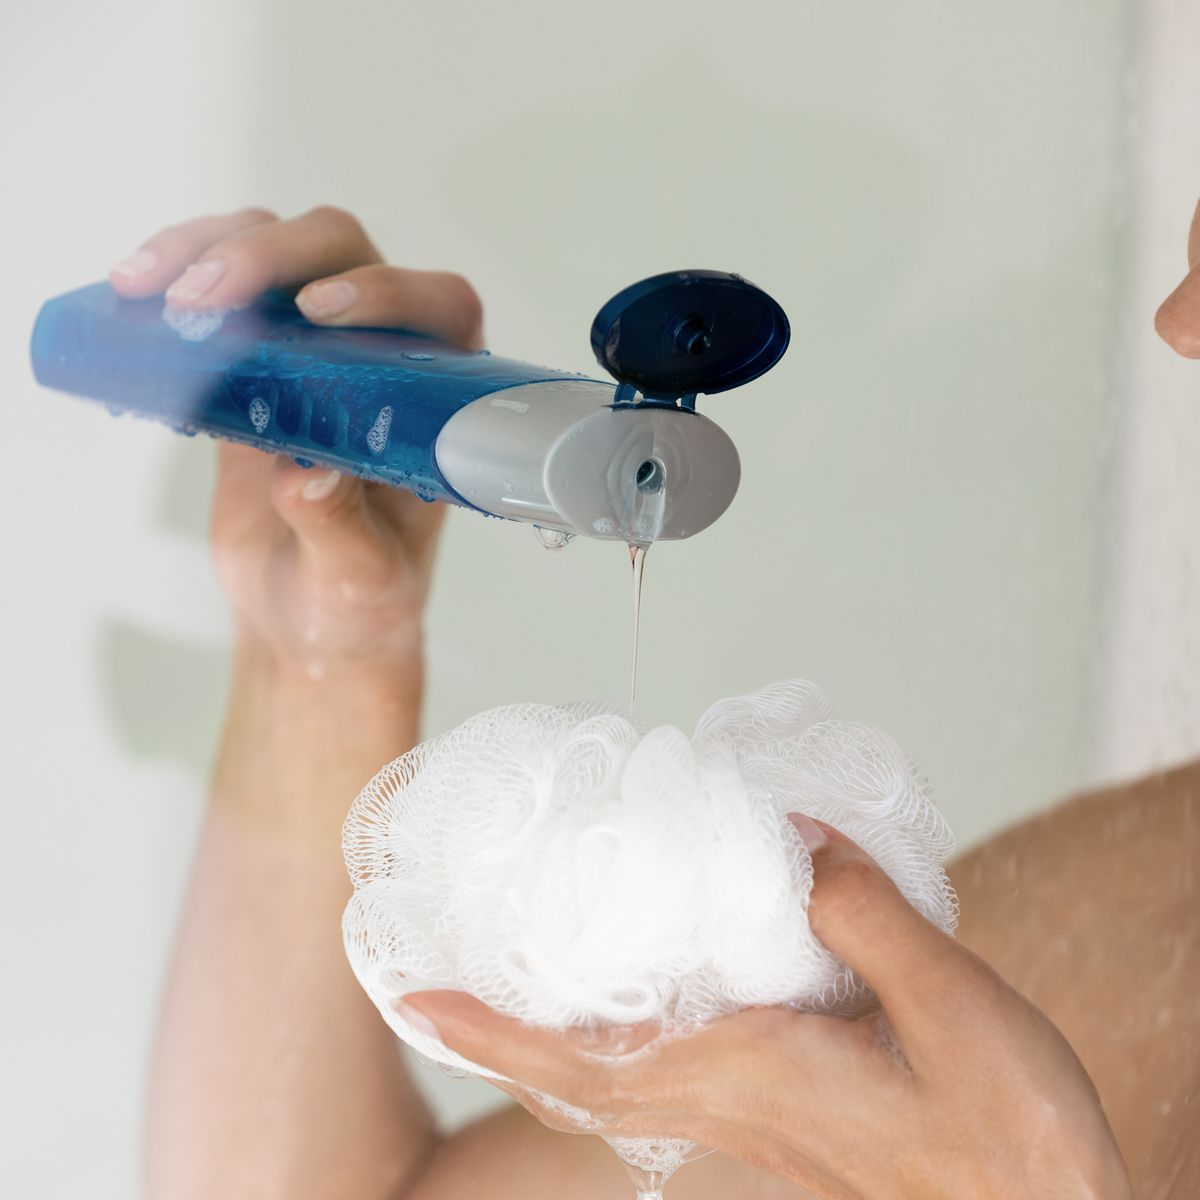 No te duches con esponja: un estudio revela por qué es mejor ducharse con  la mano